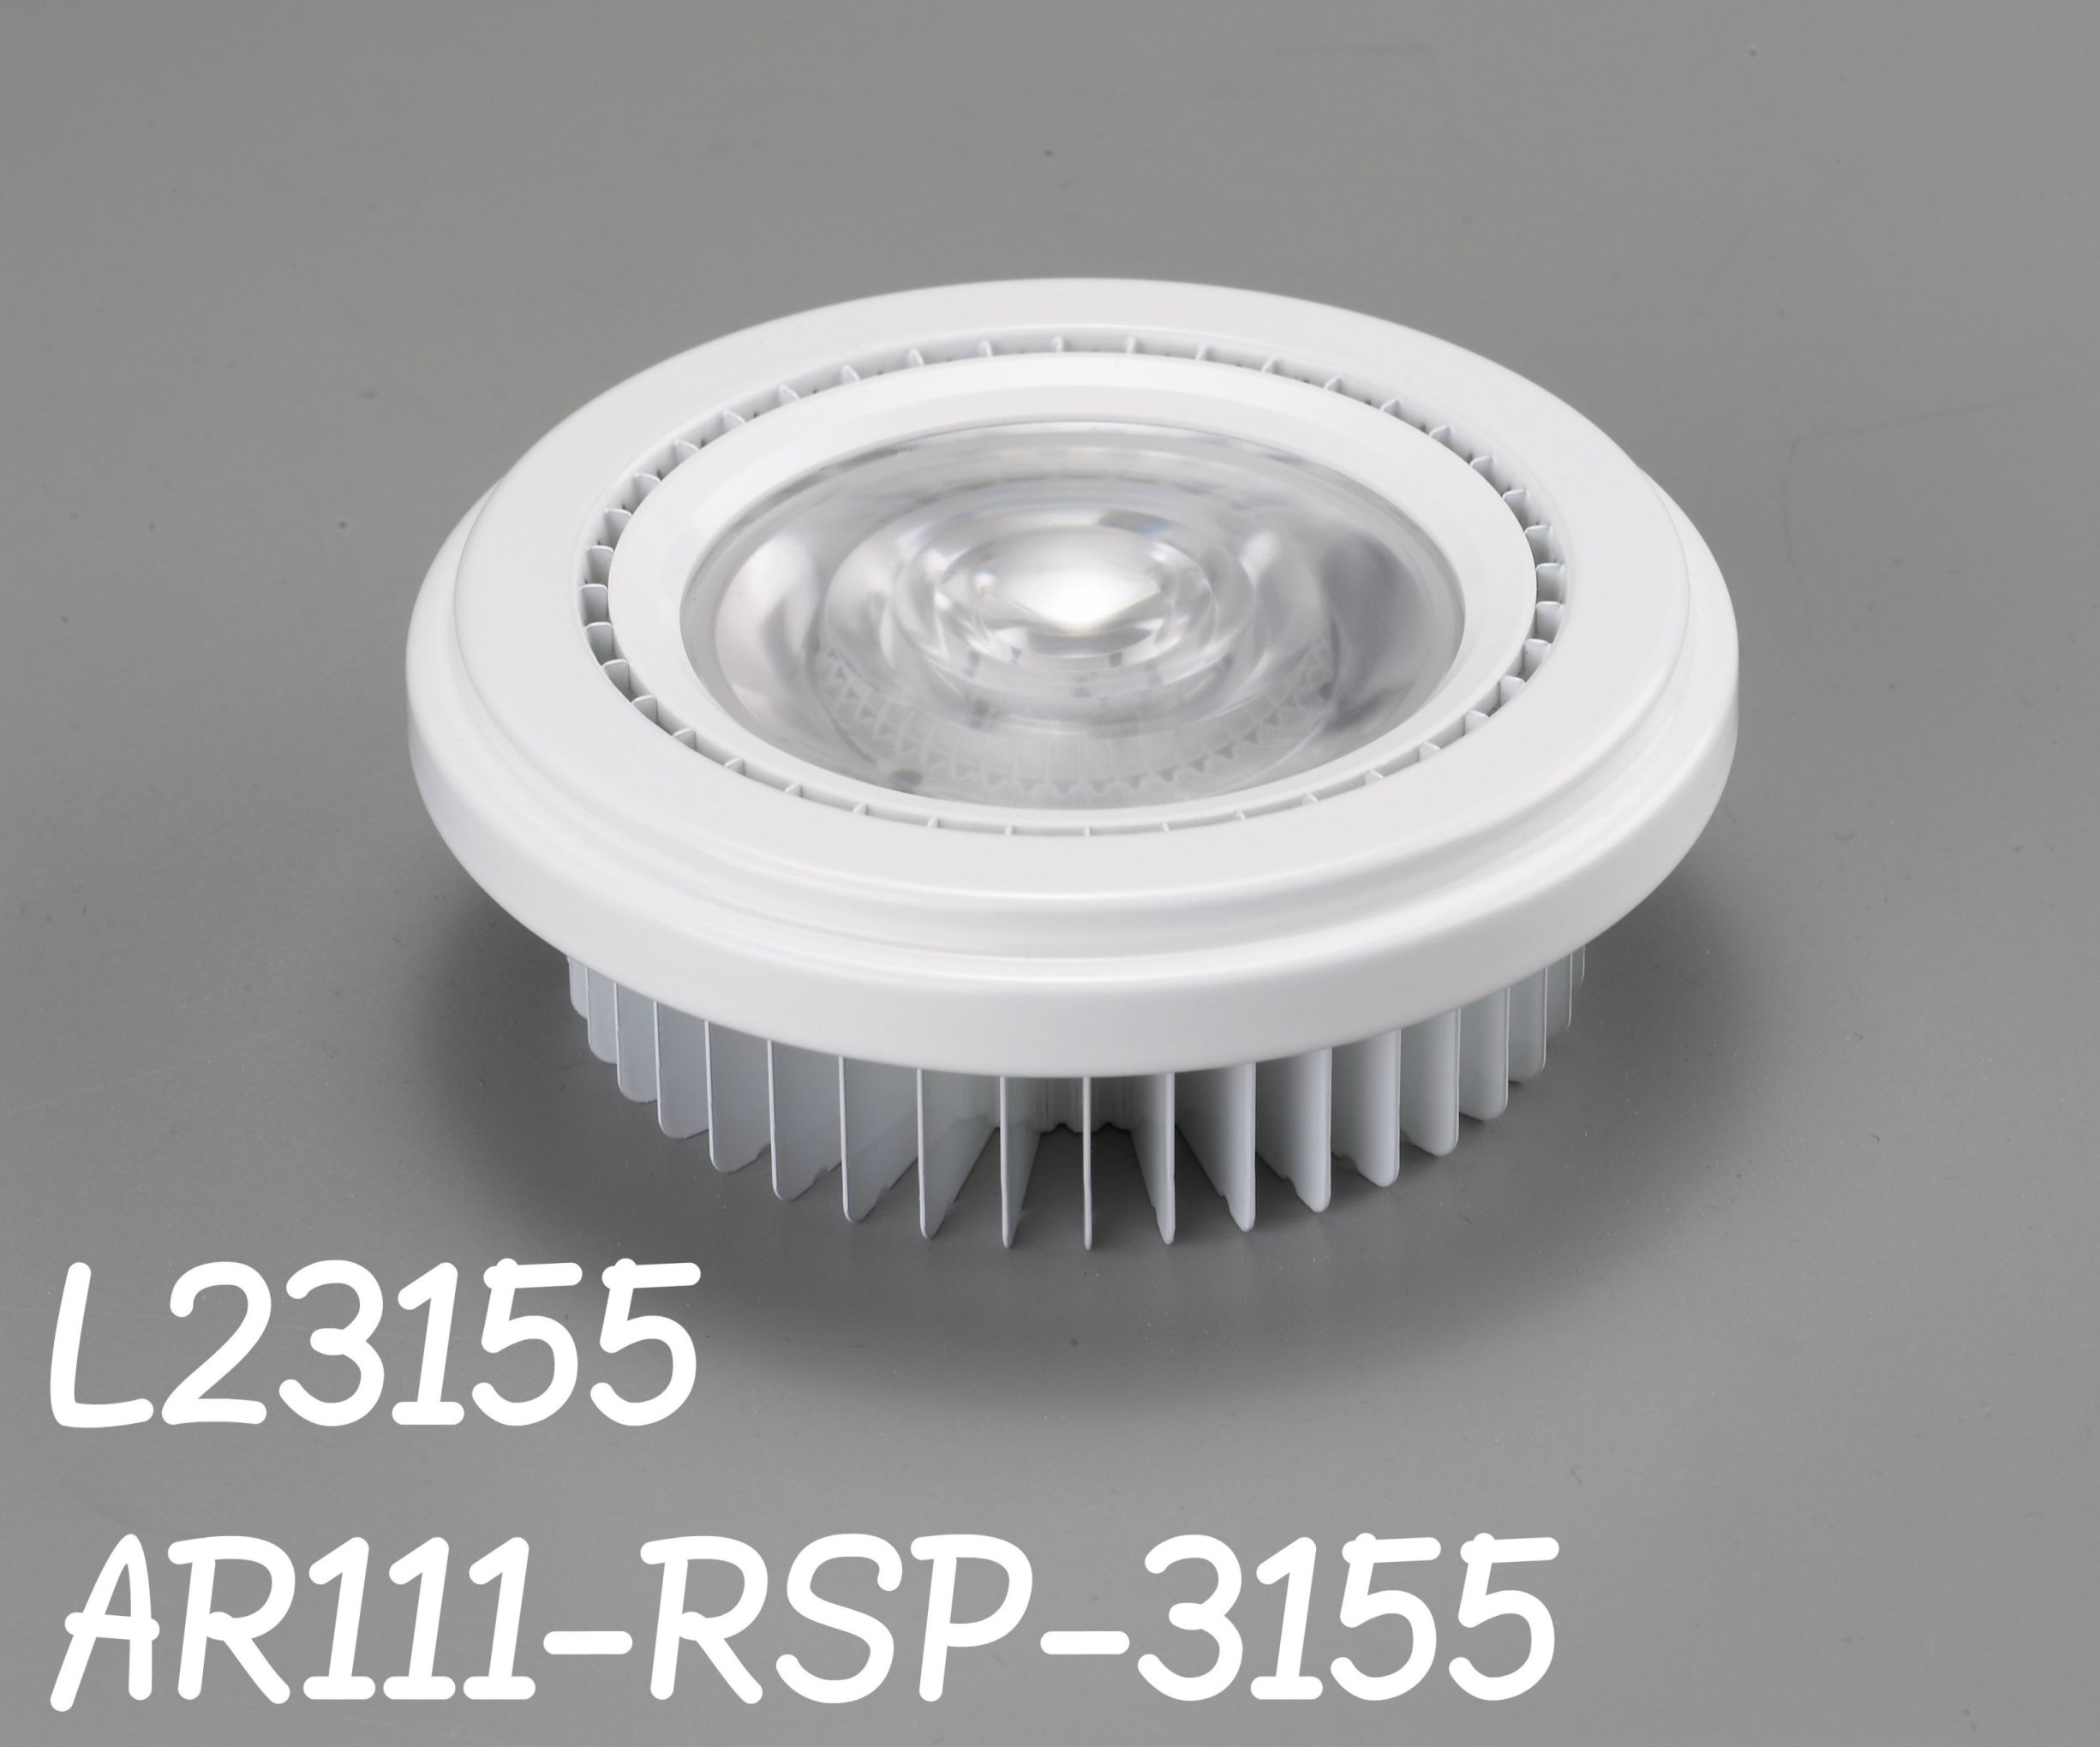 L23155-AR111-RSP-3155(加長版)